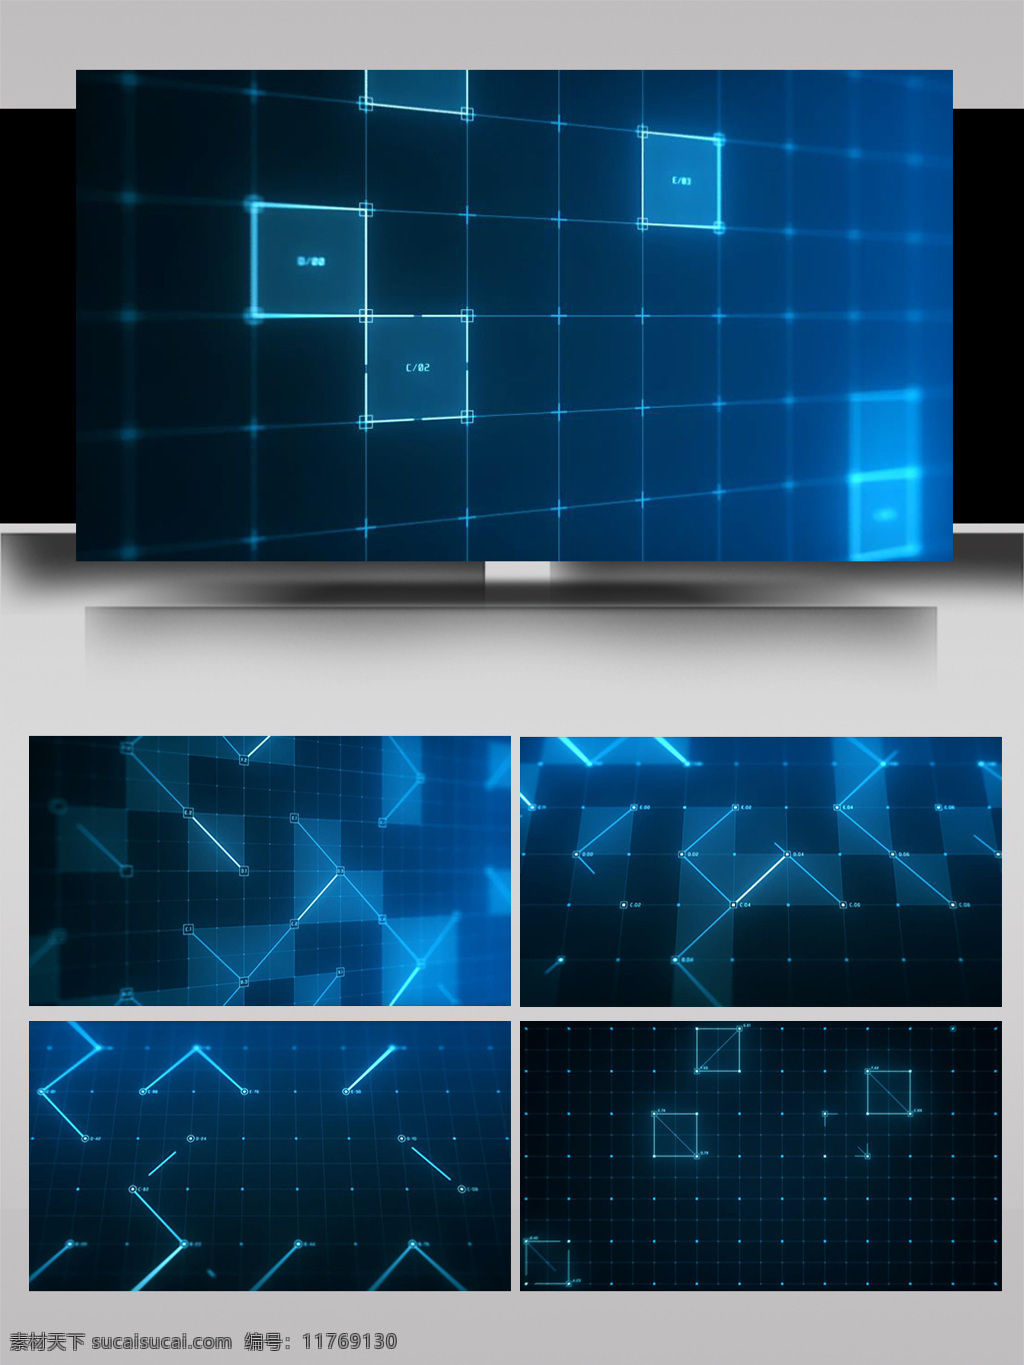 几何 立方体 光影 数字 空间 组合 ae 模板 数据 虚拟 显示 元素 函数 片头 未来 酷炫 舞台 背景